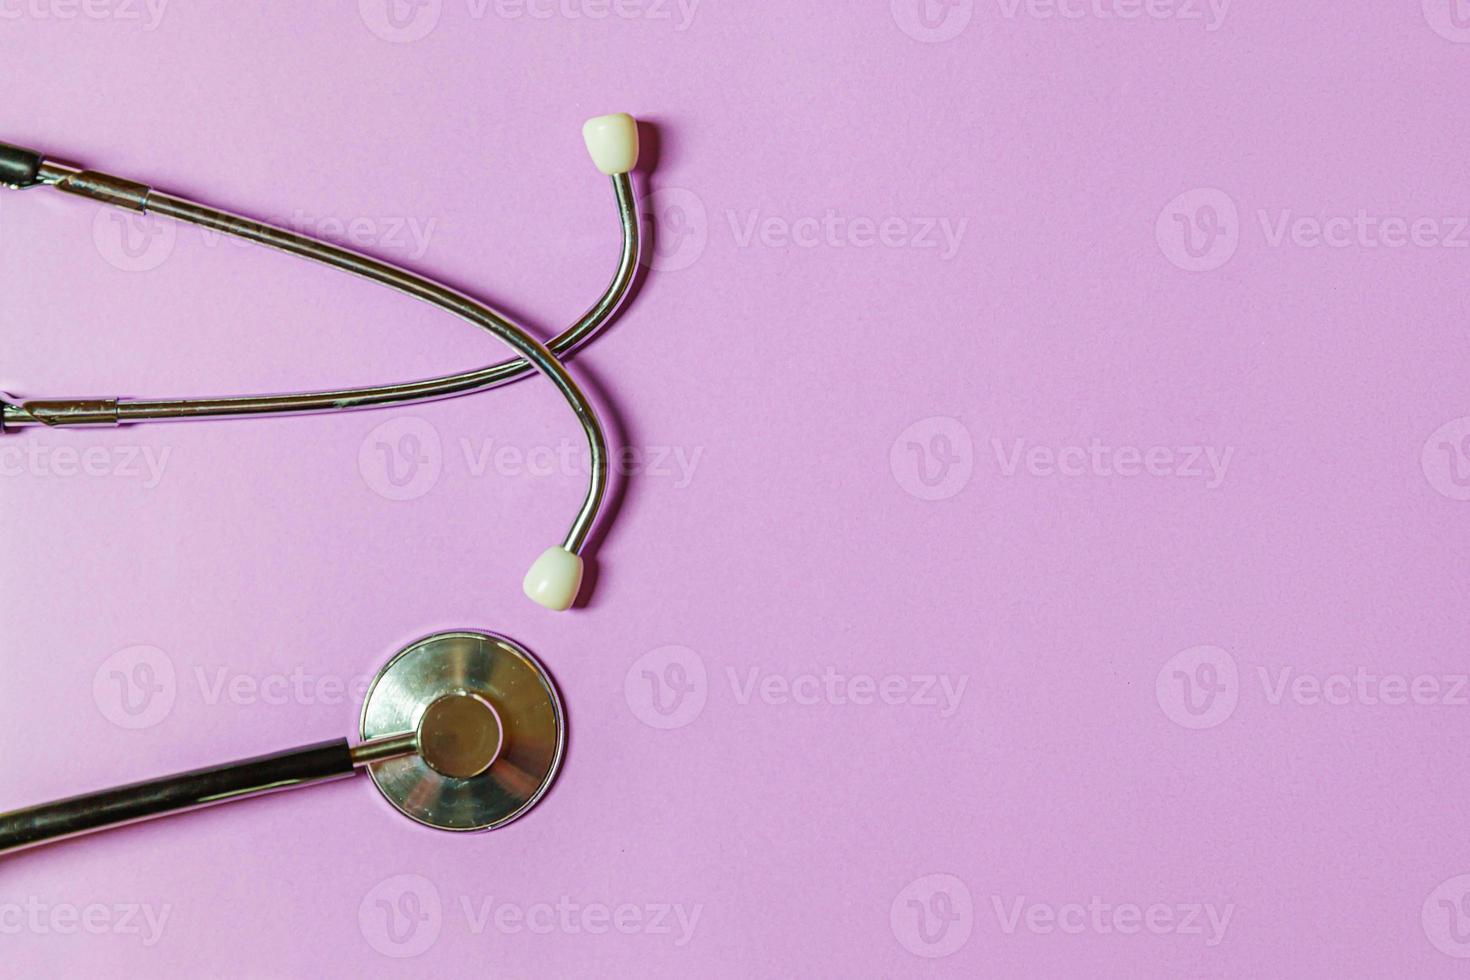 Stethoscope: Bộ phận giám sát sức khỏe đầy tiện ích, không thể thiếu được trong mọi bệnh viện. Bạn muốn tìm hiểu về sự hoạt động của nó? Hãy xem ảnh về các dụng cụ y tế trang bị stethoscope.